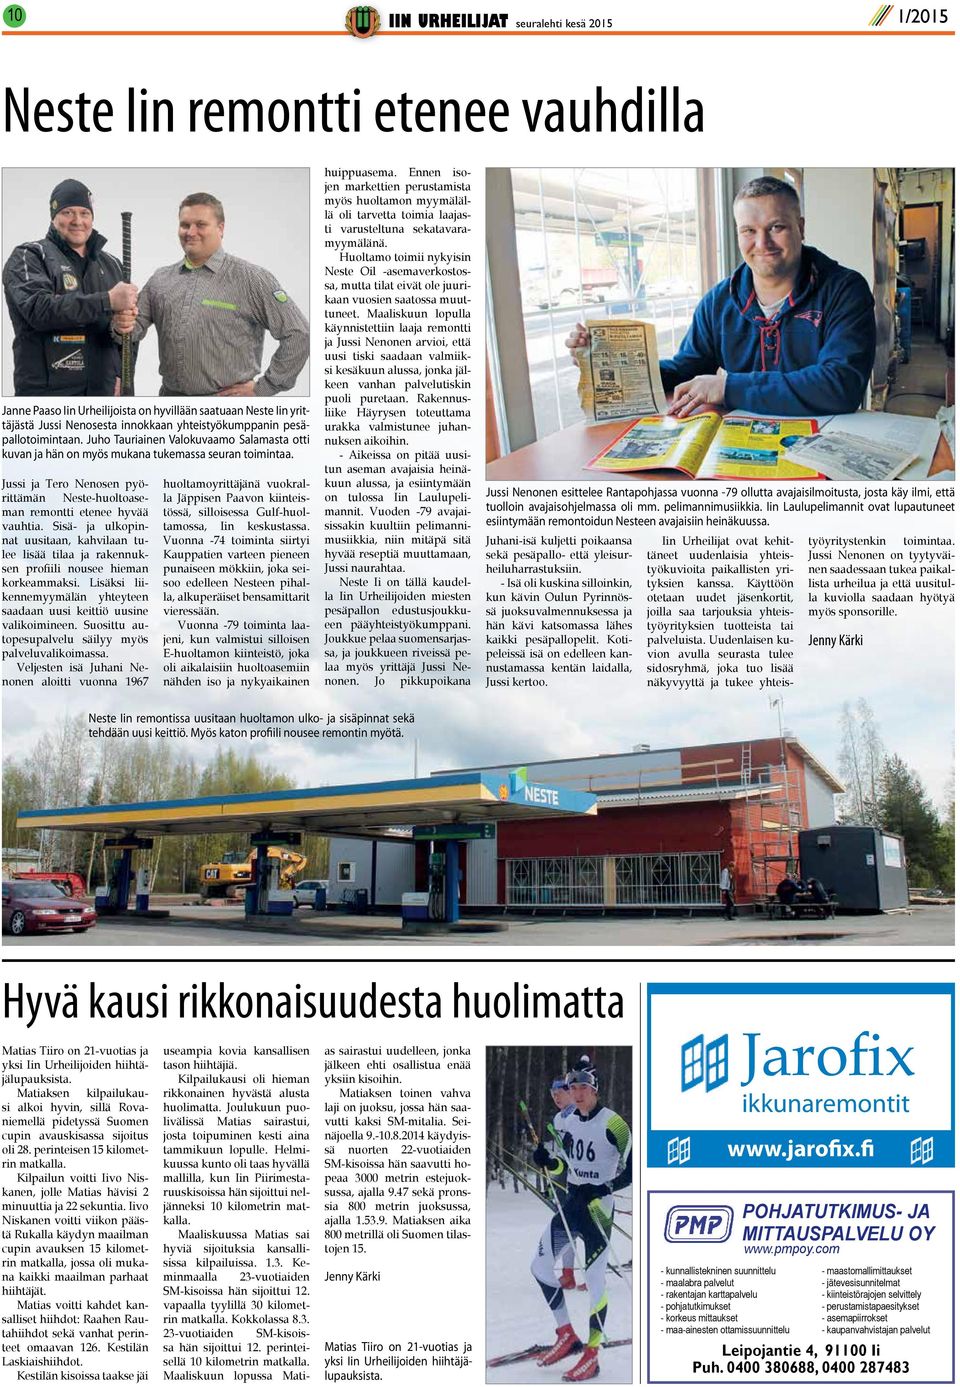 Jussi ja Tero Nenosen pyörittämän Neste-huoltoaseman remontti etenee hyvää vauhtia. Sisä- ja ulkopinnat uusitaan, kahvilaan tulee lisää tilaa ja rakennuksen profiili nousee hieman korkeammaksi.